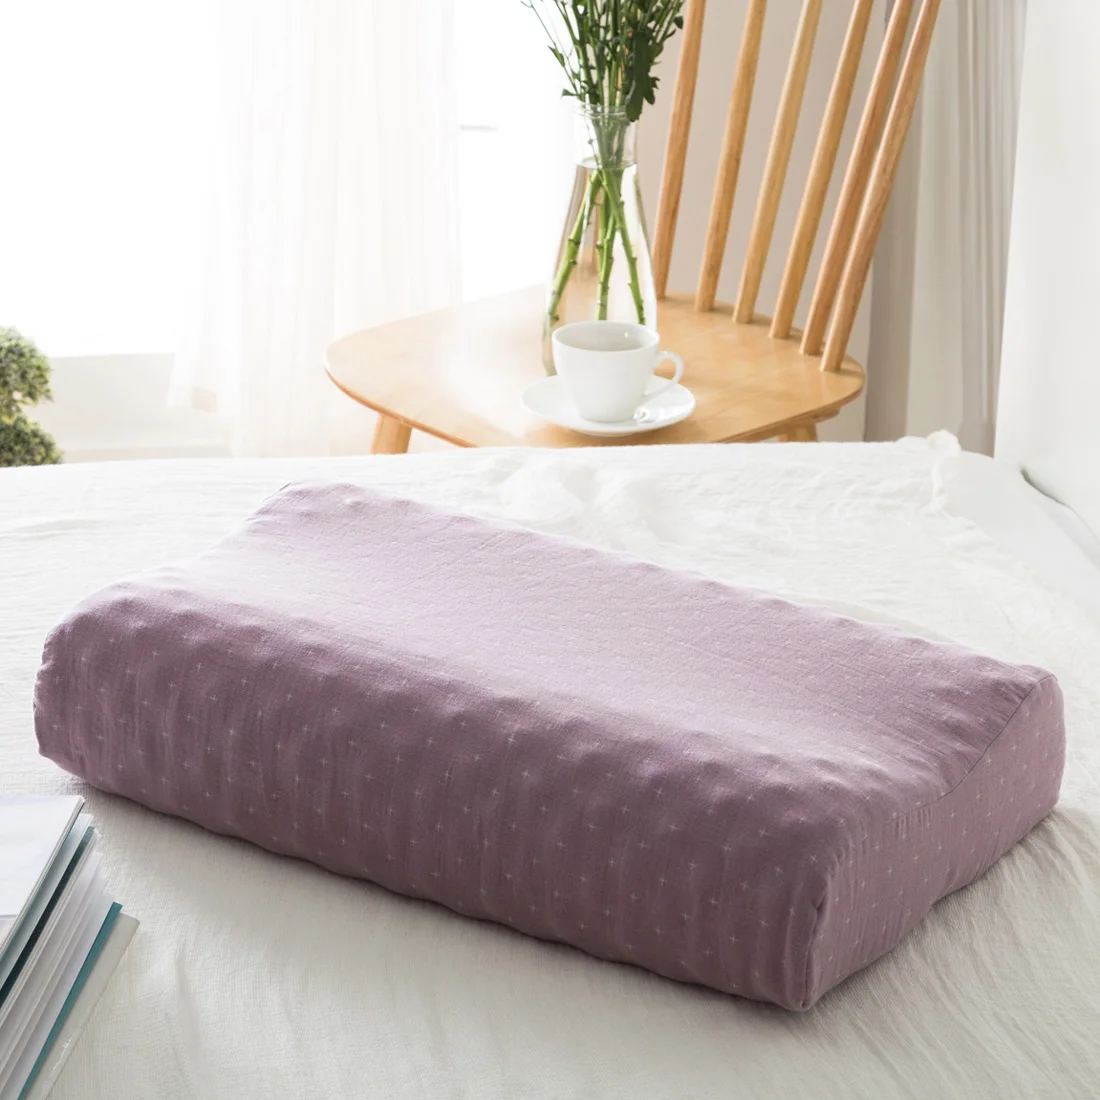 Новая тайская импортная подушка из натурального латекса Ортопедическая подушка для шеи Ортопедическая латексная подушка 60x40x12x10 см - Цвет: Розовый